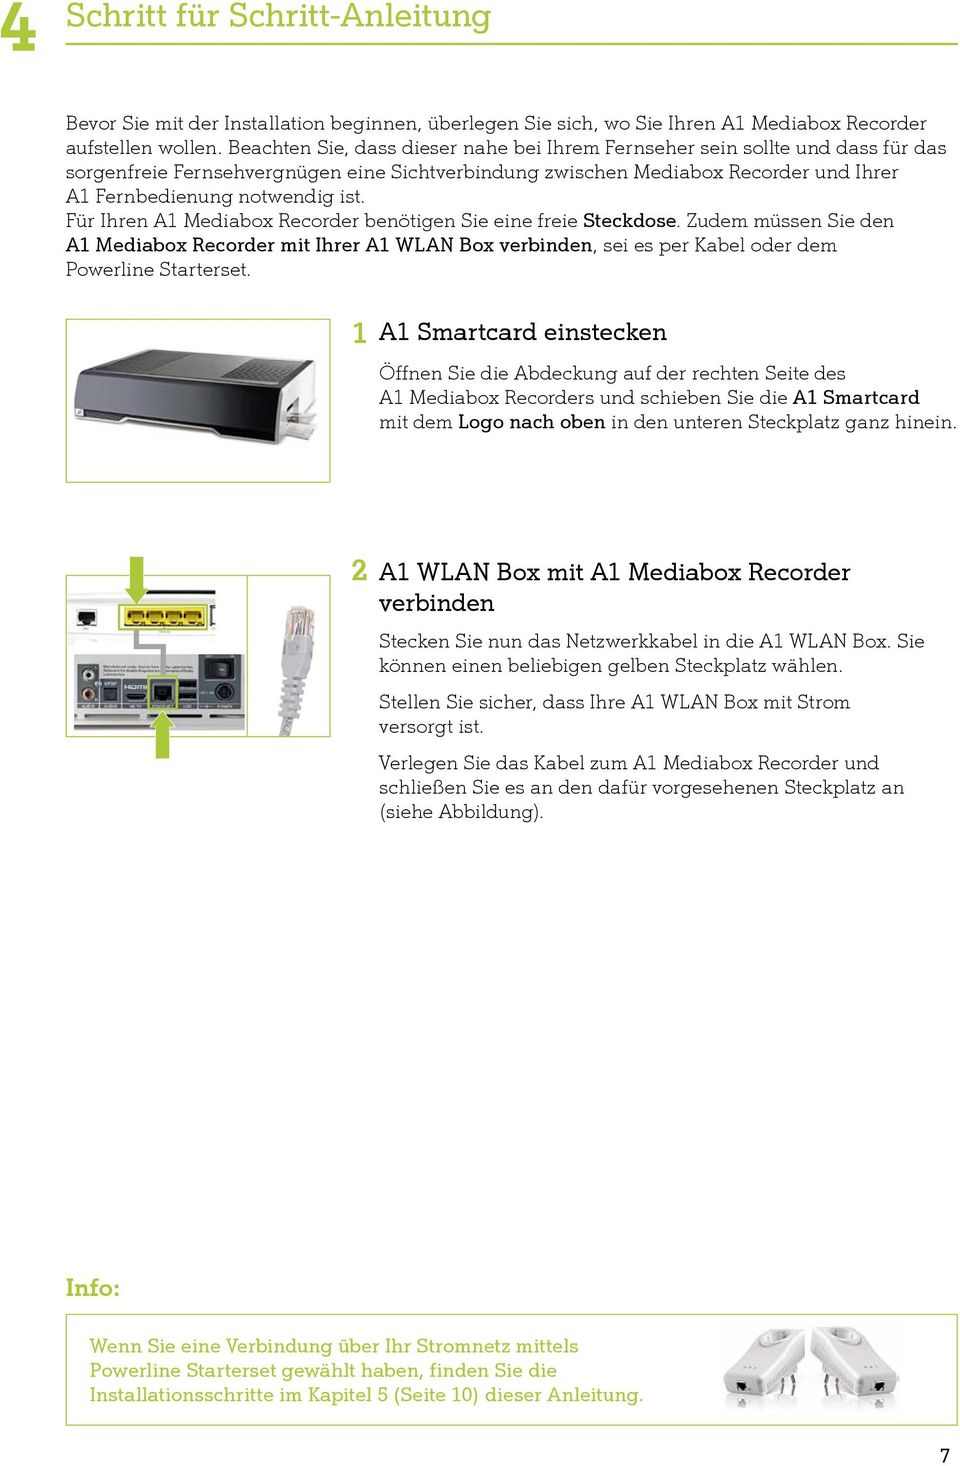 Für Ihren A1 Mediabox Recorder benötigen Sie eine freie Steckdose. Zudem müssen Sie den A1 Mediabox Recorder mit Ihrer A1 WLAN Box verbinden, sei es per Kabel oder dem Powerline Starterset.